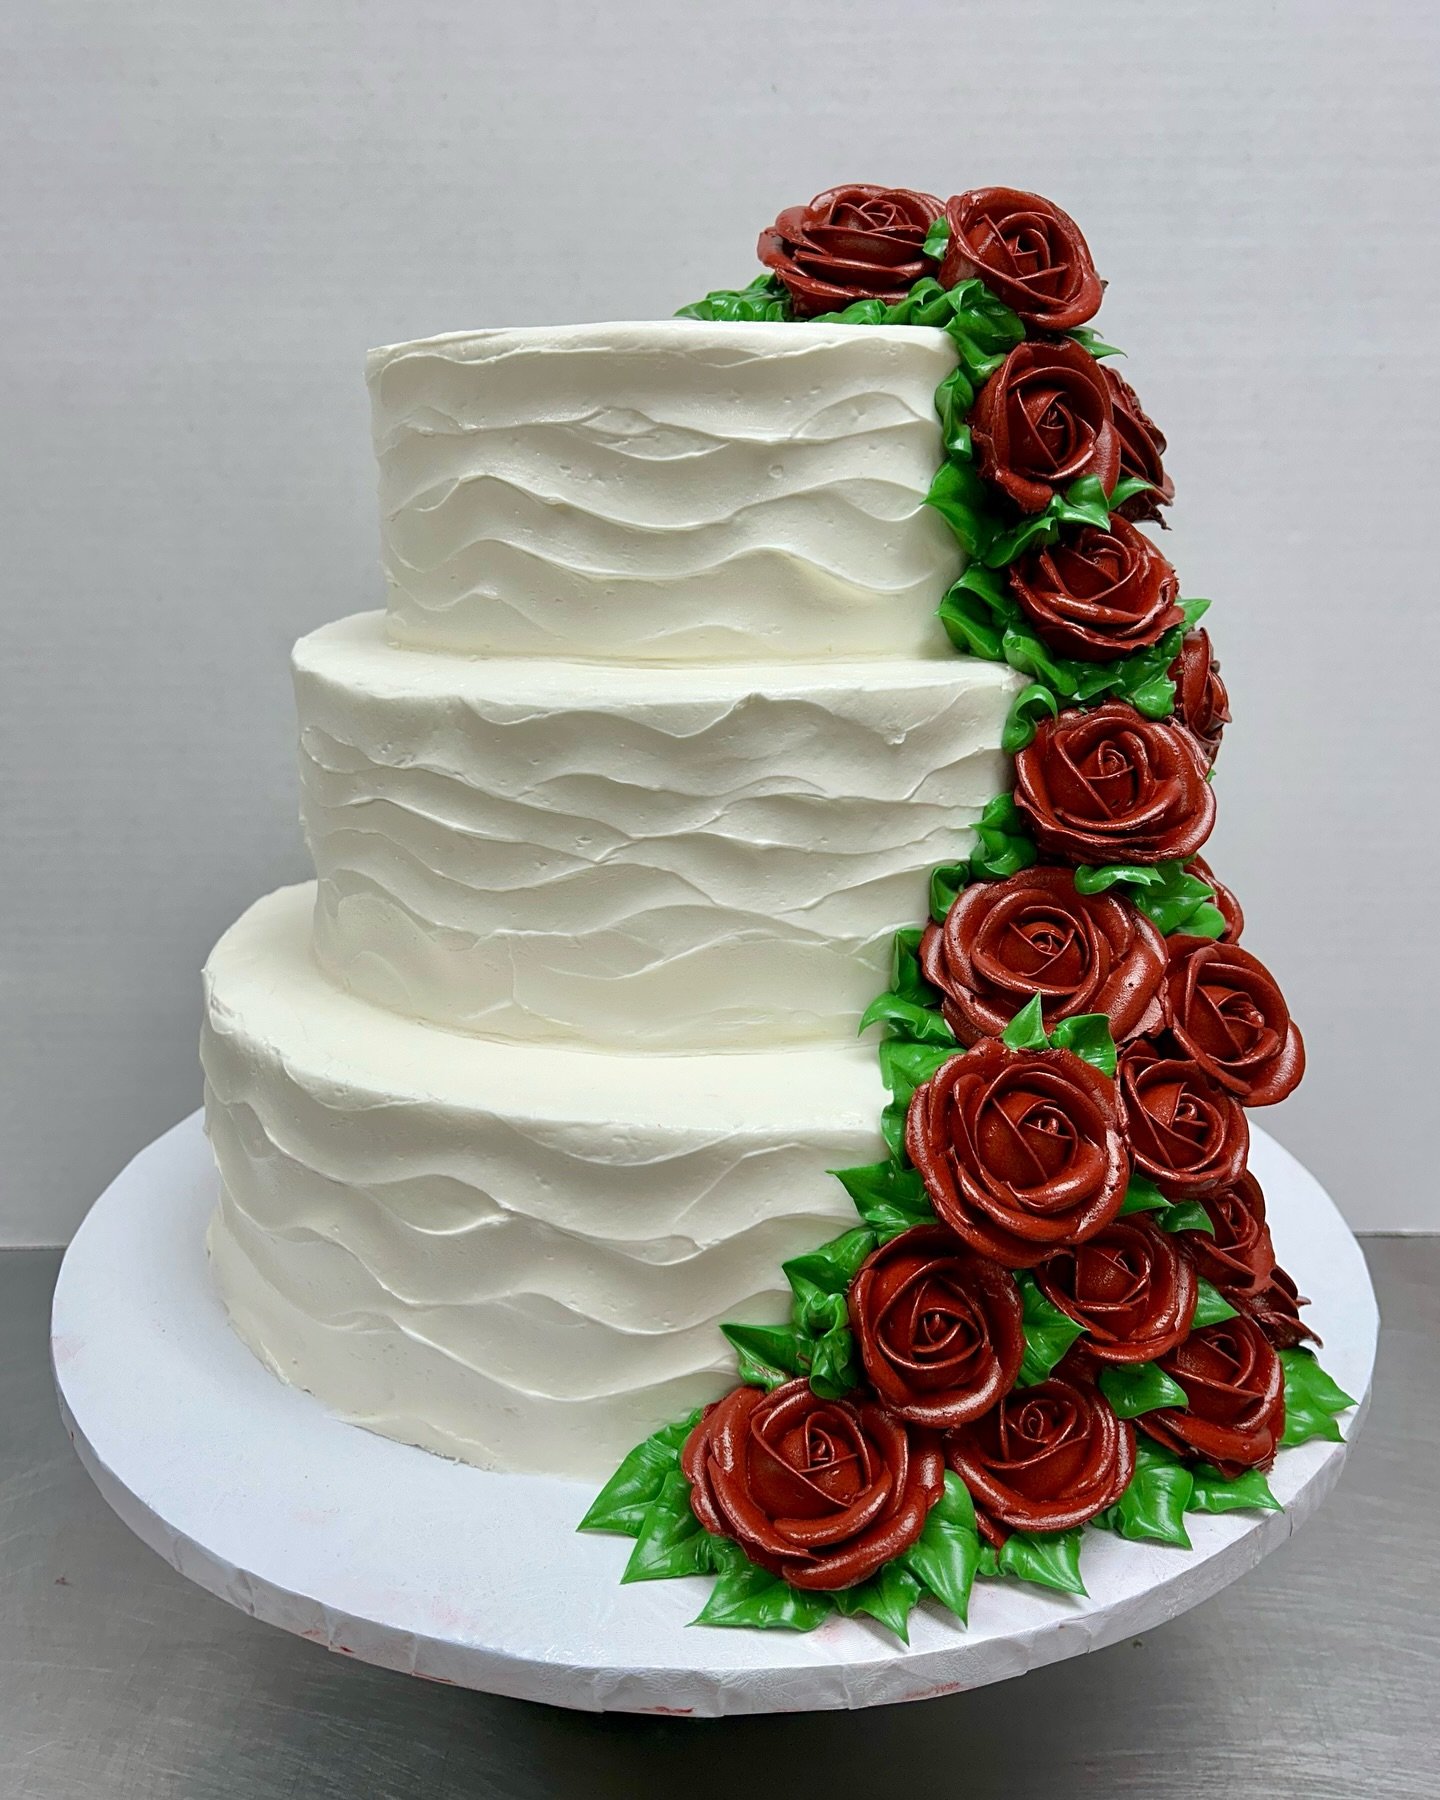 Wedding cake with cascading roses, so beautiful 😍 

#weddingcake #tieredcake #bakery #nybakery